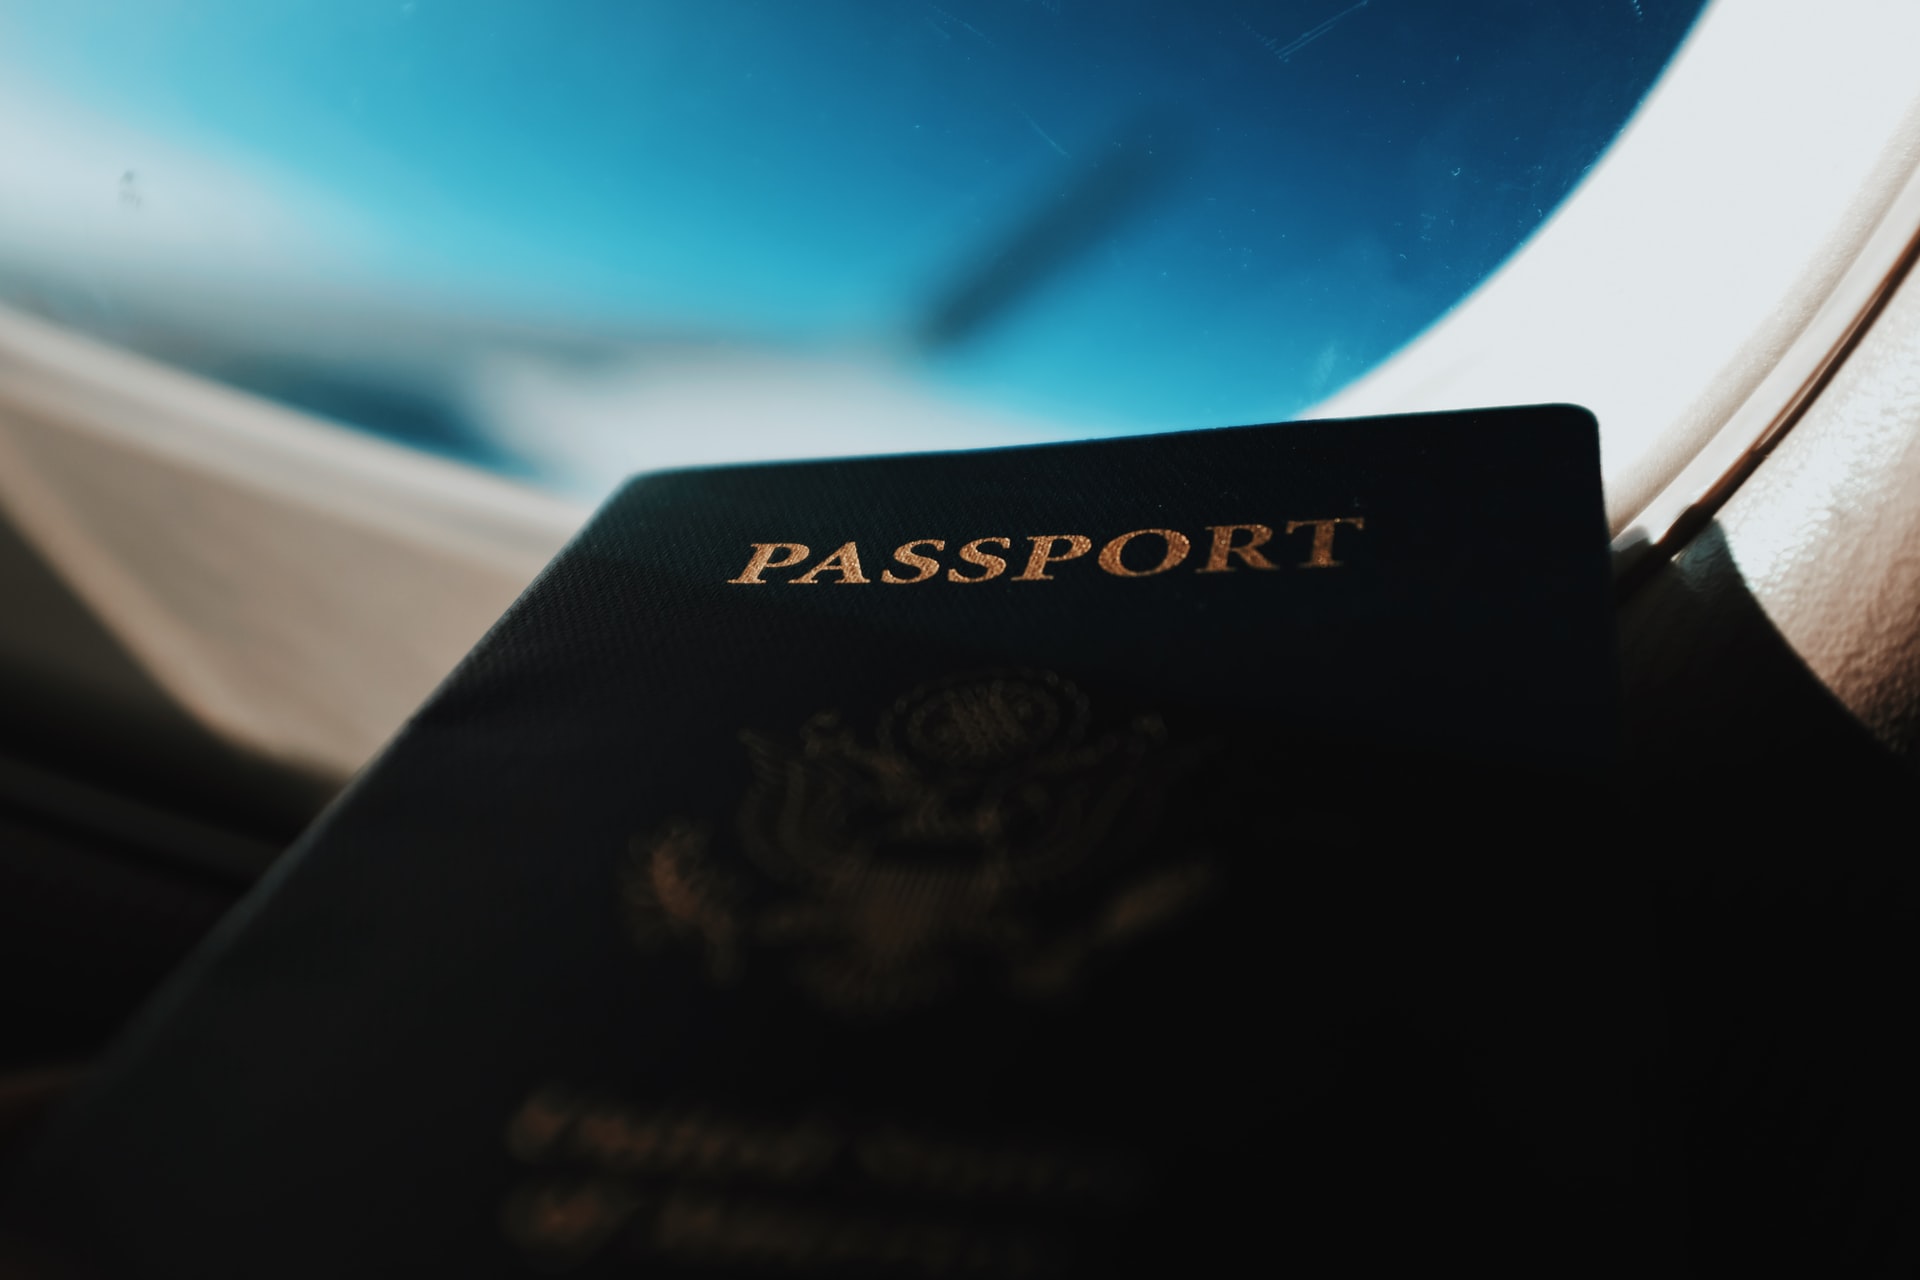 Άμεσα και ατελώς η αντικατάσταση διαβατηρίων και ταυτοτήτων σε πληγέντες ©Unsplash